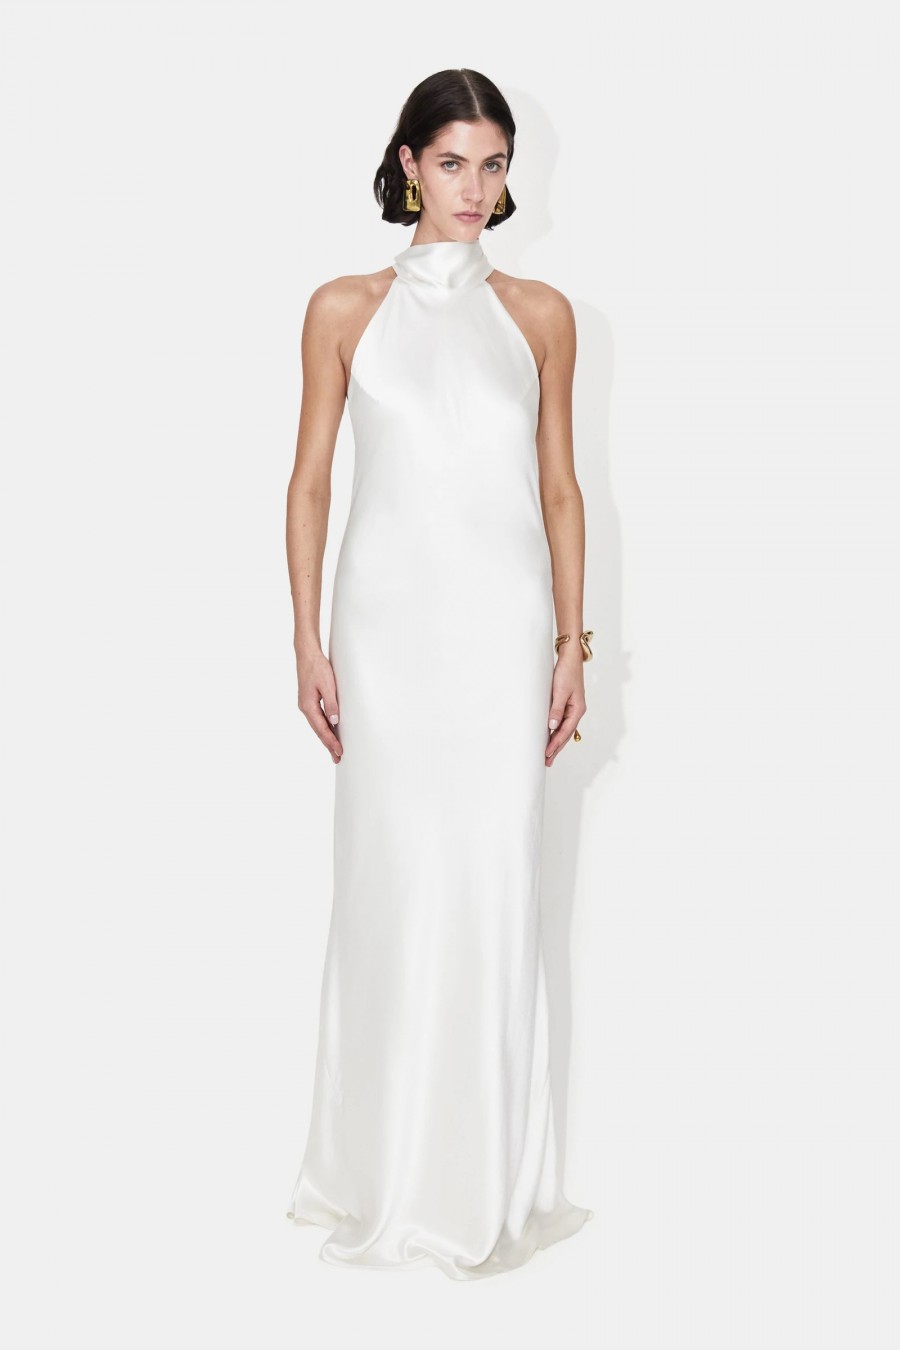 20 High-Class High Neck Bridal Gowns – Stillwhite Blog